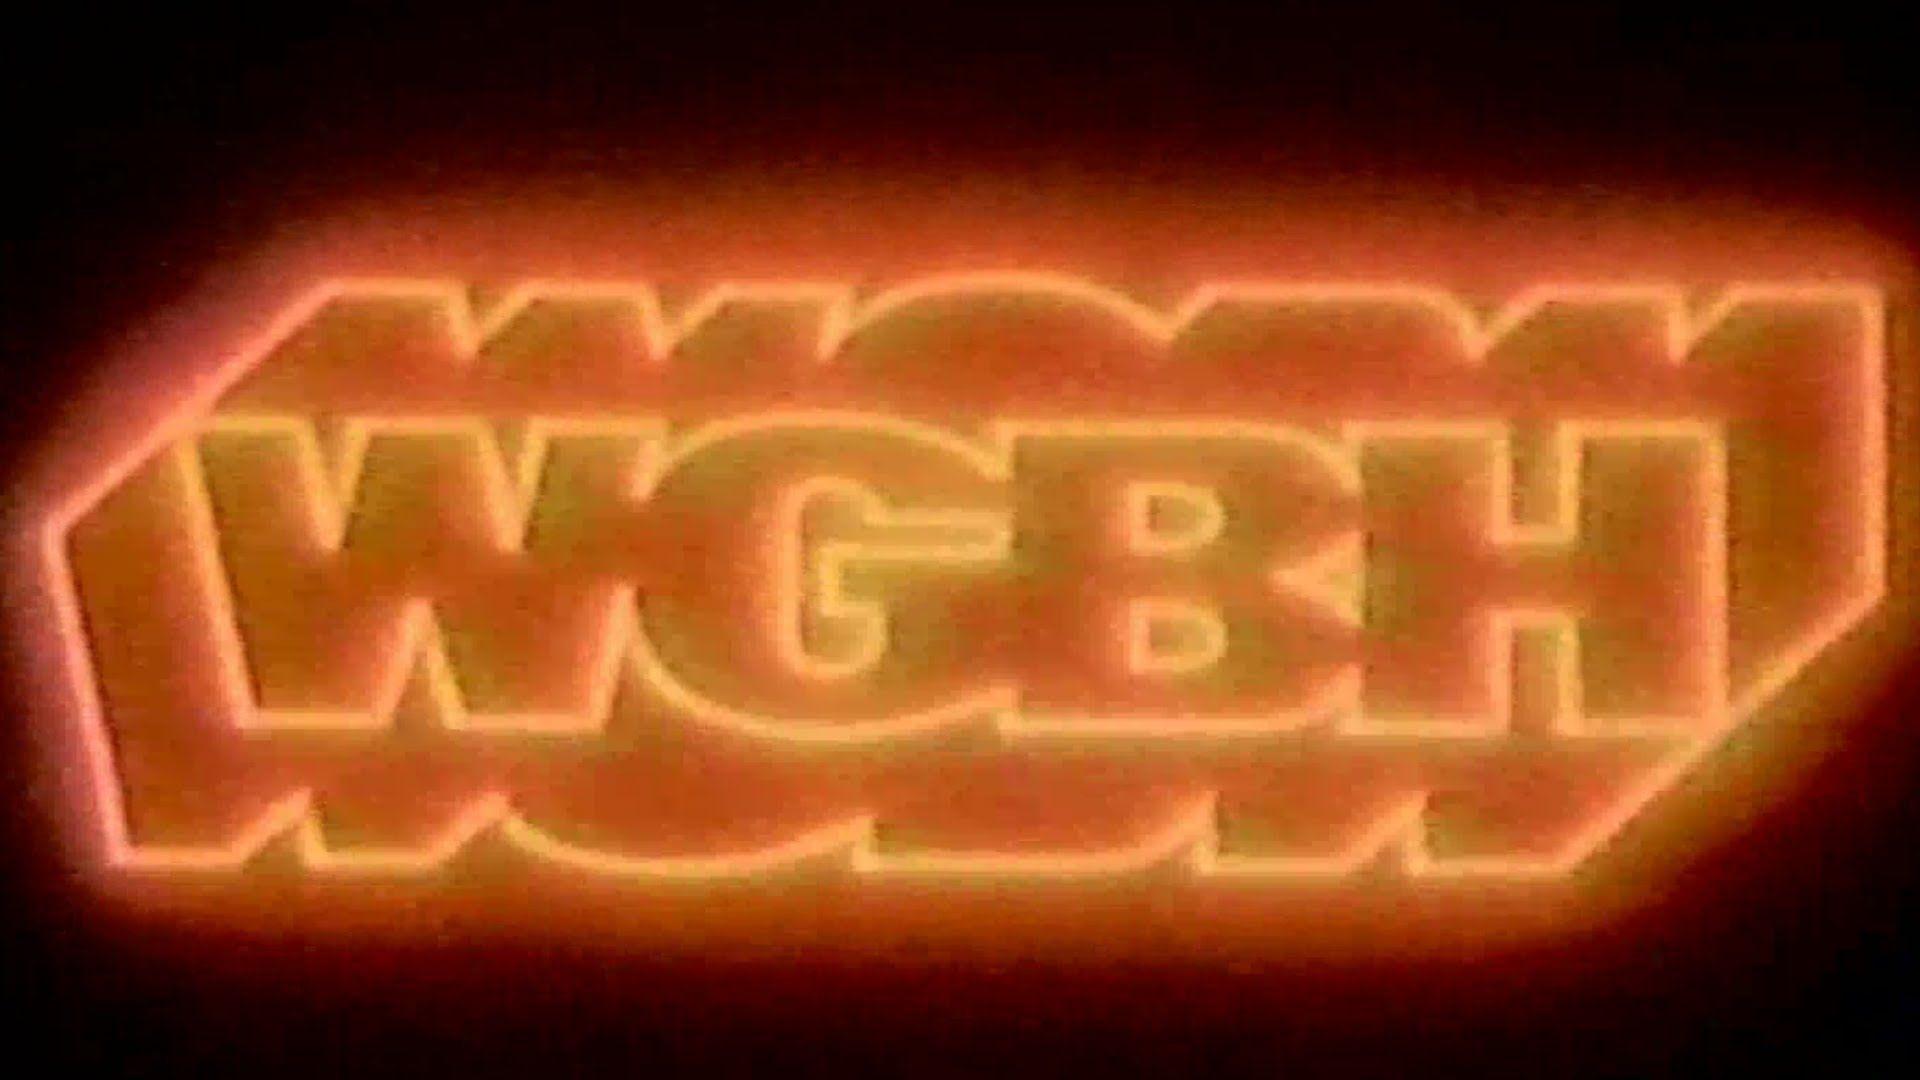 WGBX Logo - Wgbx Boston | www.topsimages.com